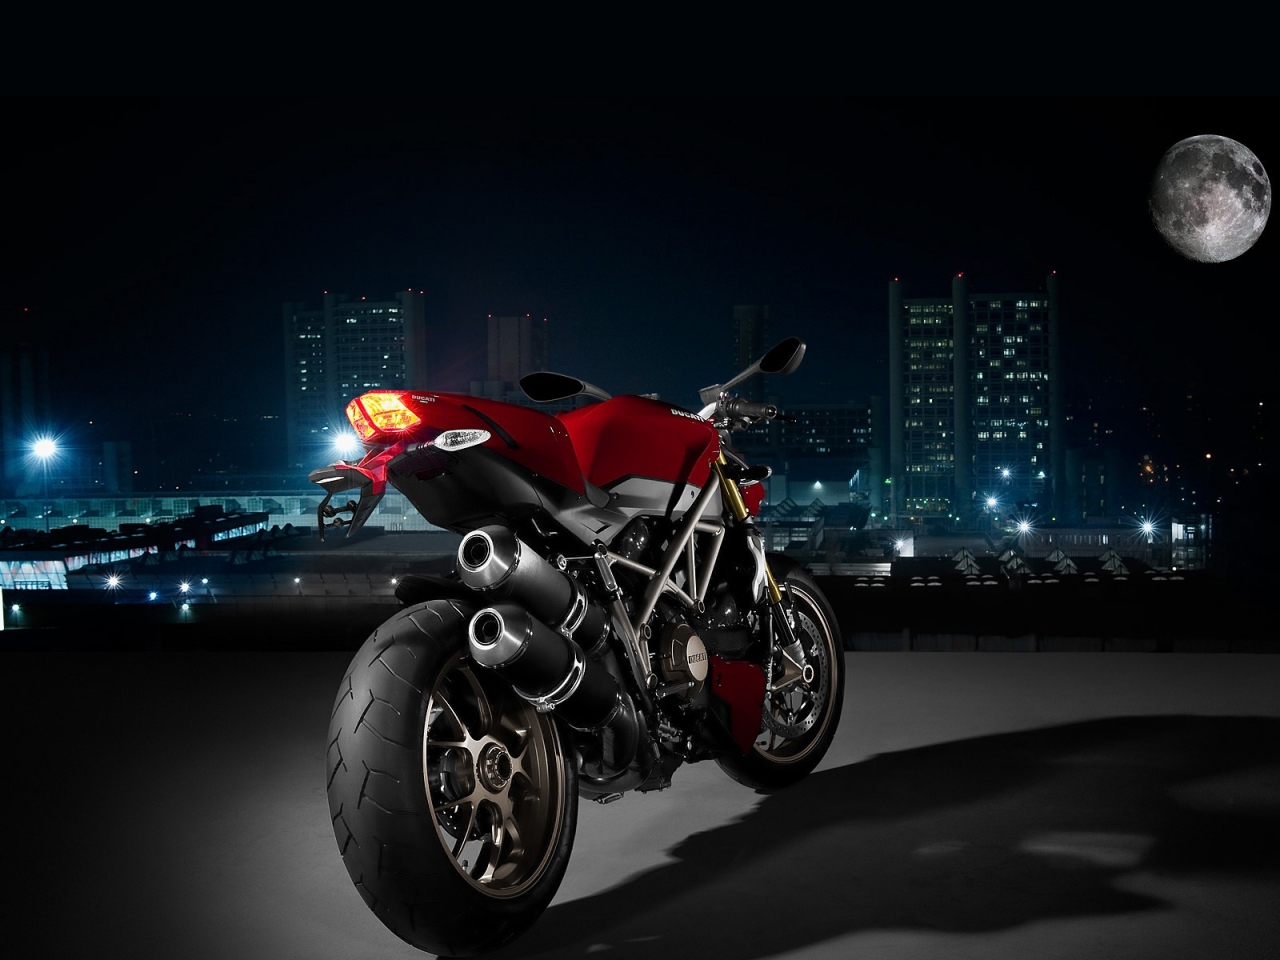 Ducati Super Sport Rear Angle for 1280 x 960 resolution